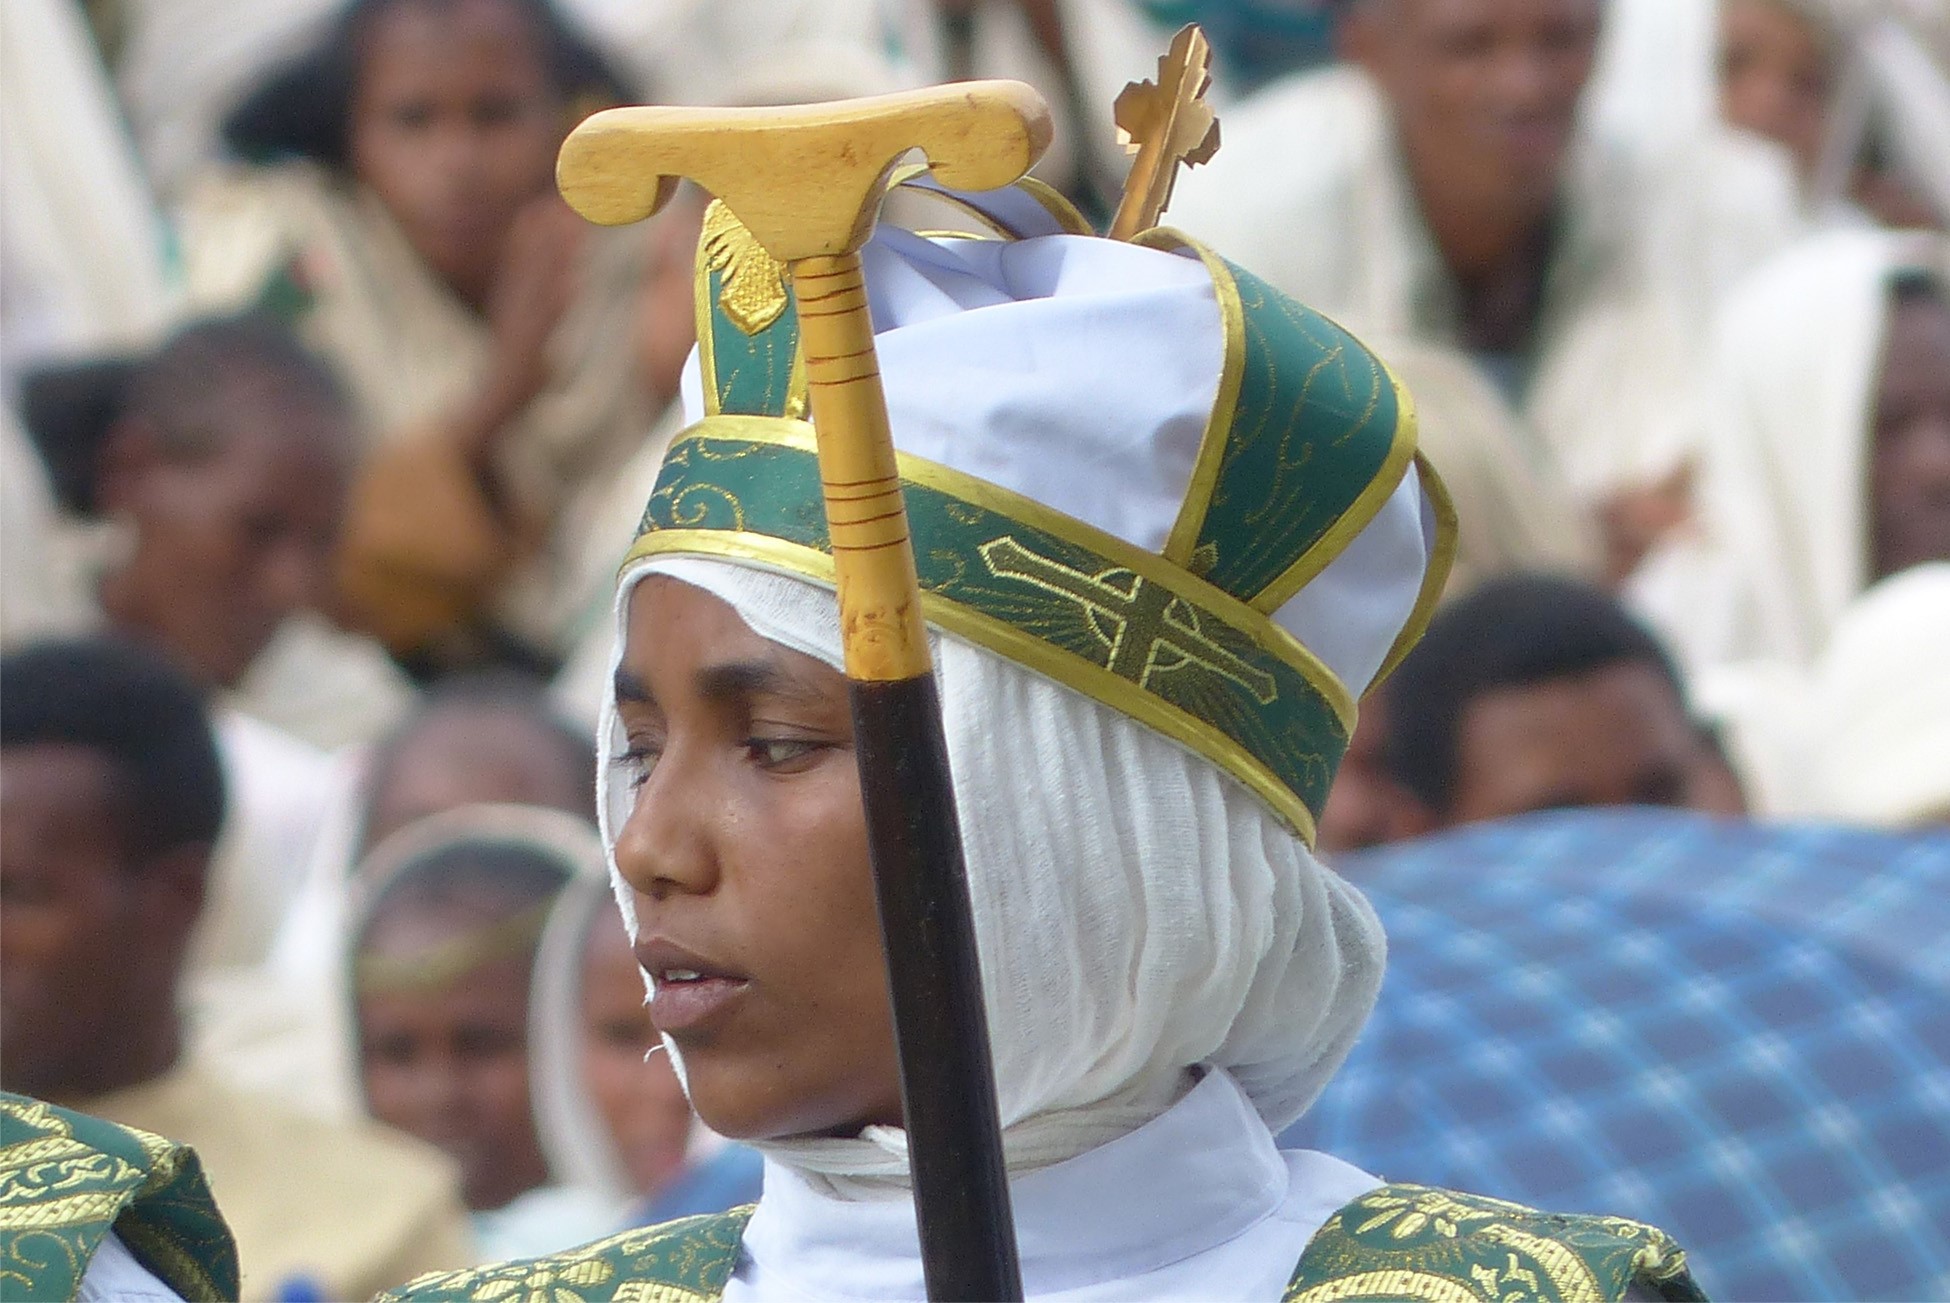 FOTOAUSSTELLUNG im MHH KunstGang // Menschen in Äthiopien - Fotoprojekt von Wolfgang Niess